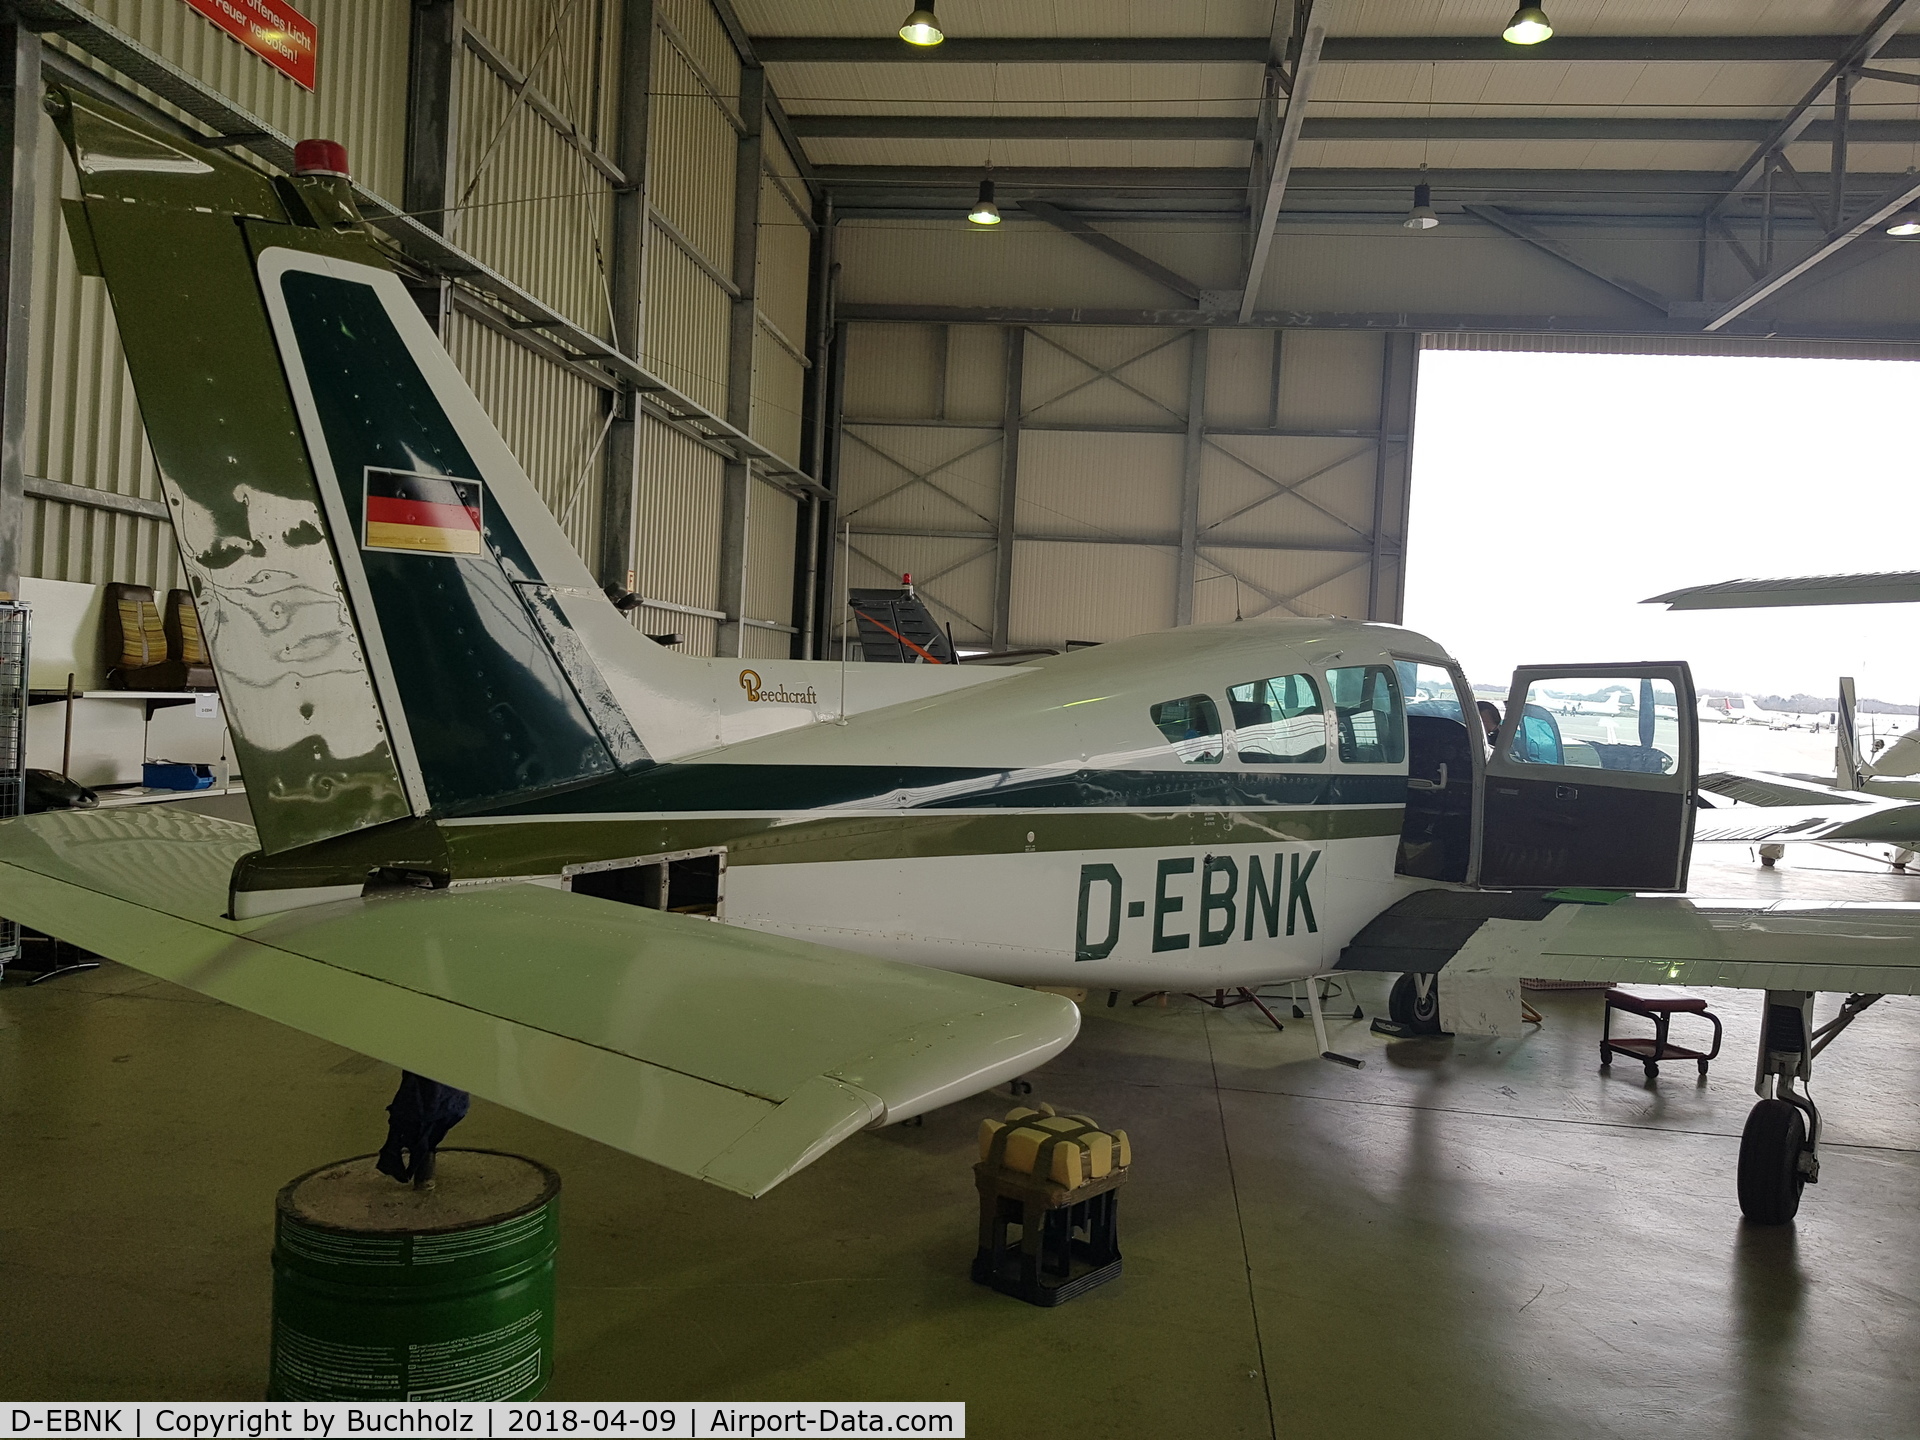 D-EBNK, Beechcraft 24R Sierra 200 C/N MC-222, D-EBNK IN DER ARC